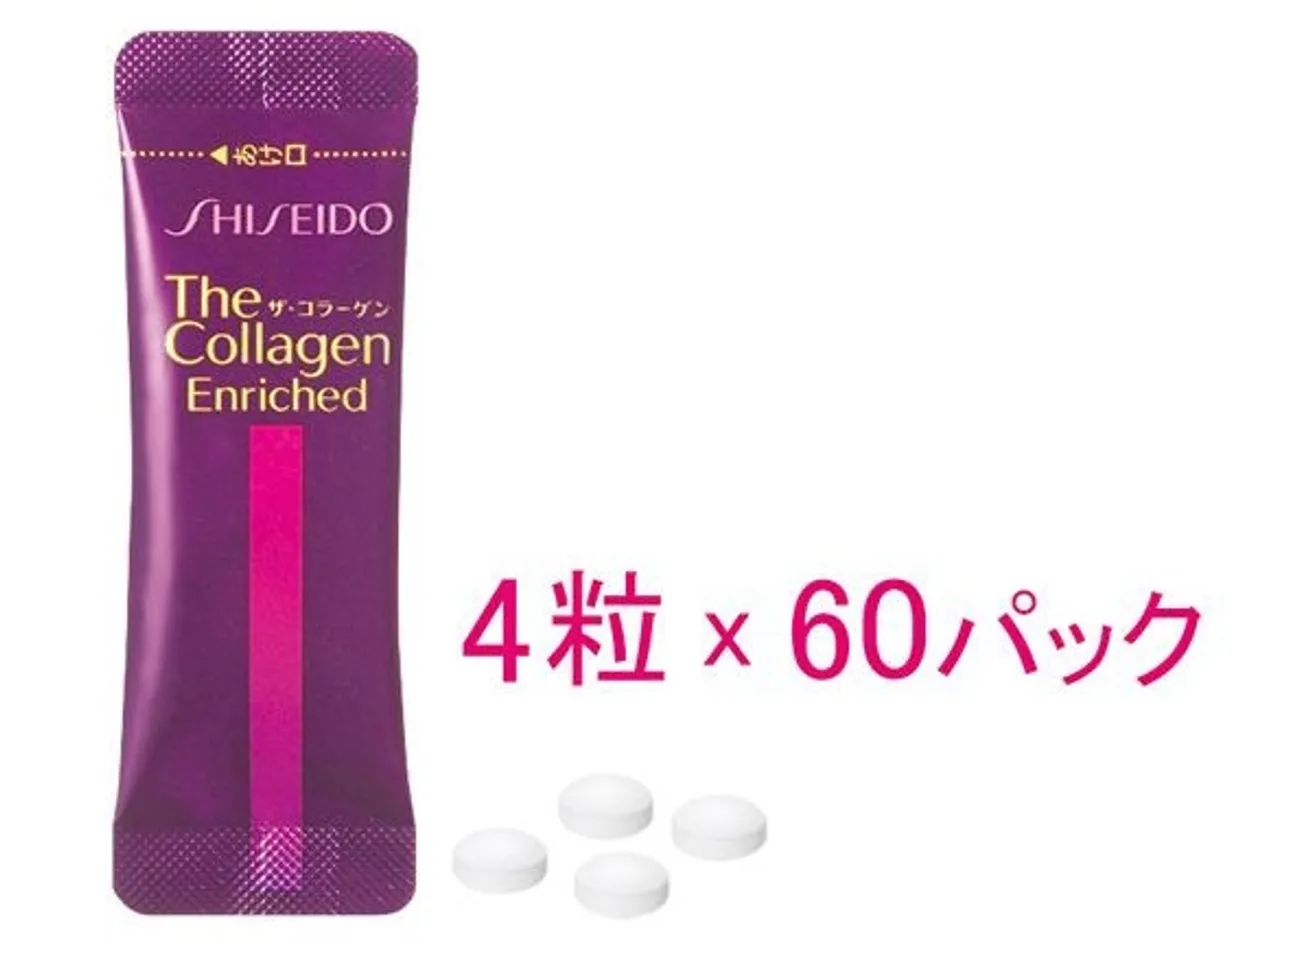 Collagen shiseido enriched dạng viên cũng được sản xuất từ nguồn nguyên liệu có nguồn gốc 100% tự nhiên